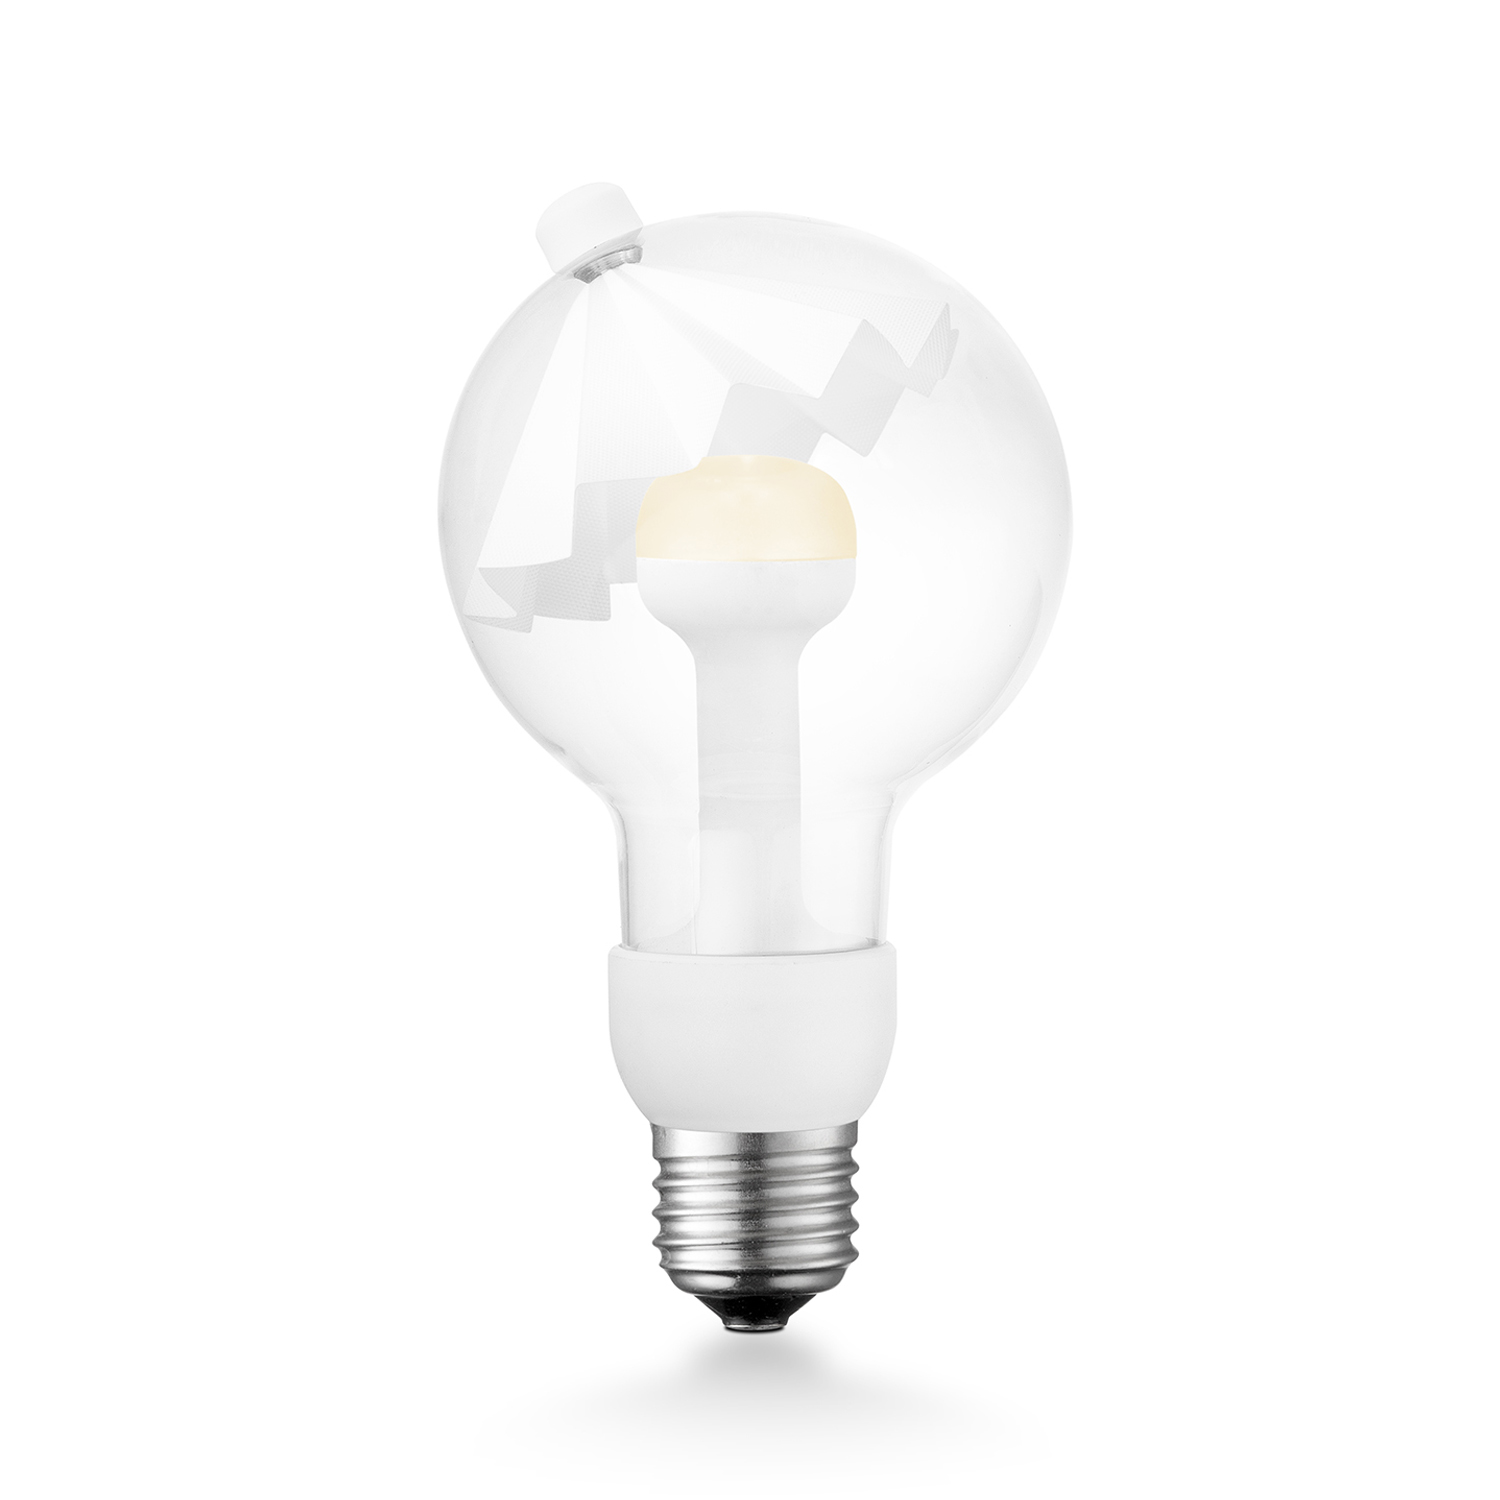 Tangla lighting - 0370-06-N - LED Light Bulb Move me - G80 3W Umbrella white - E27 / E26